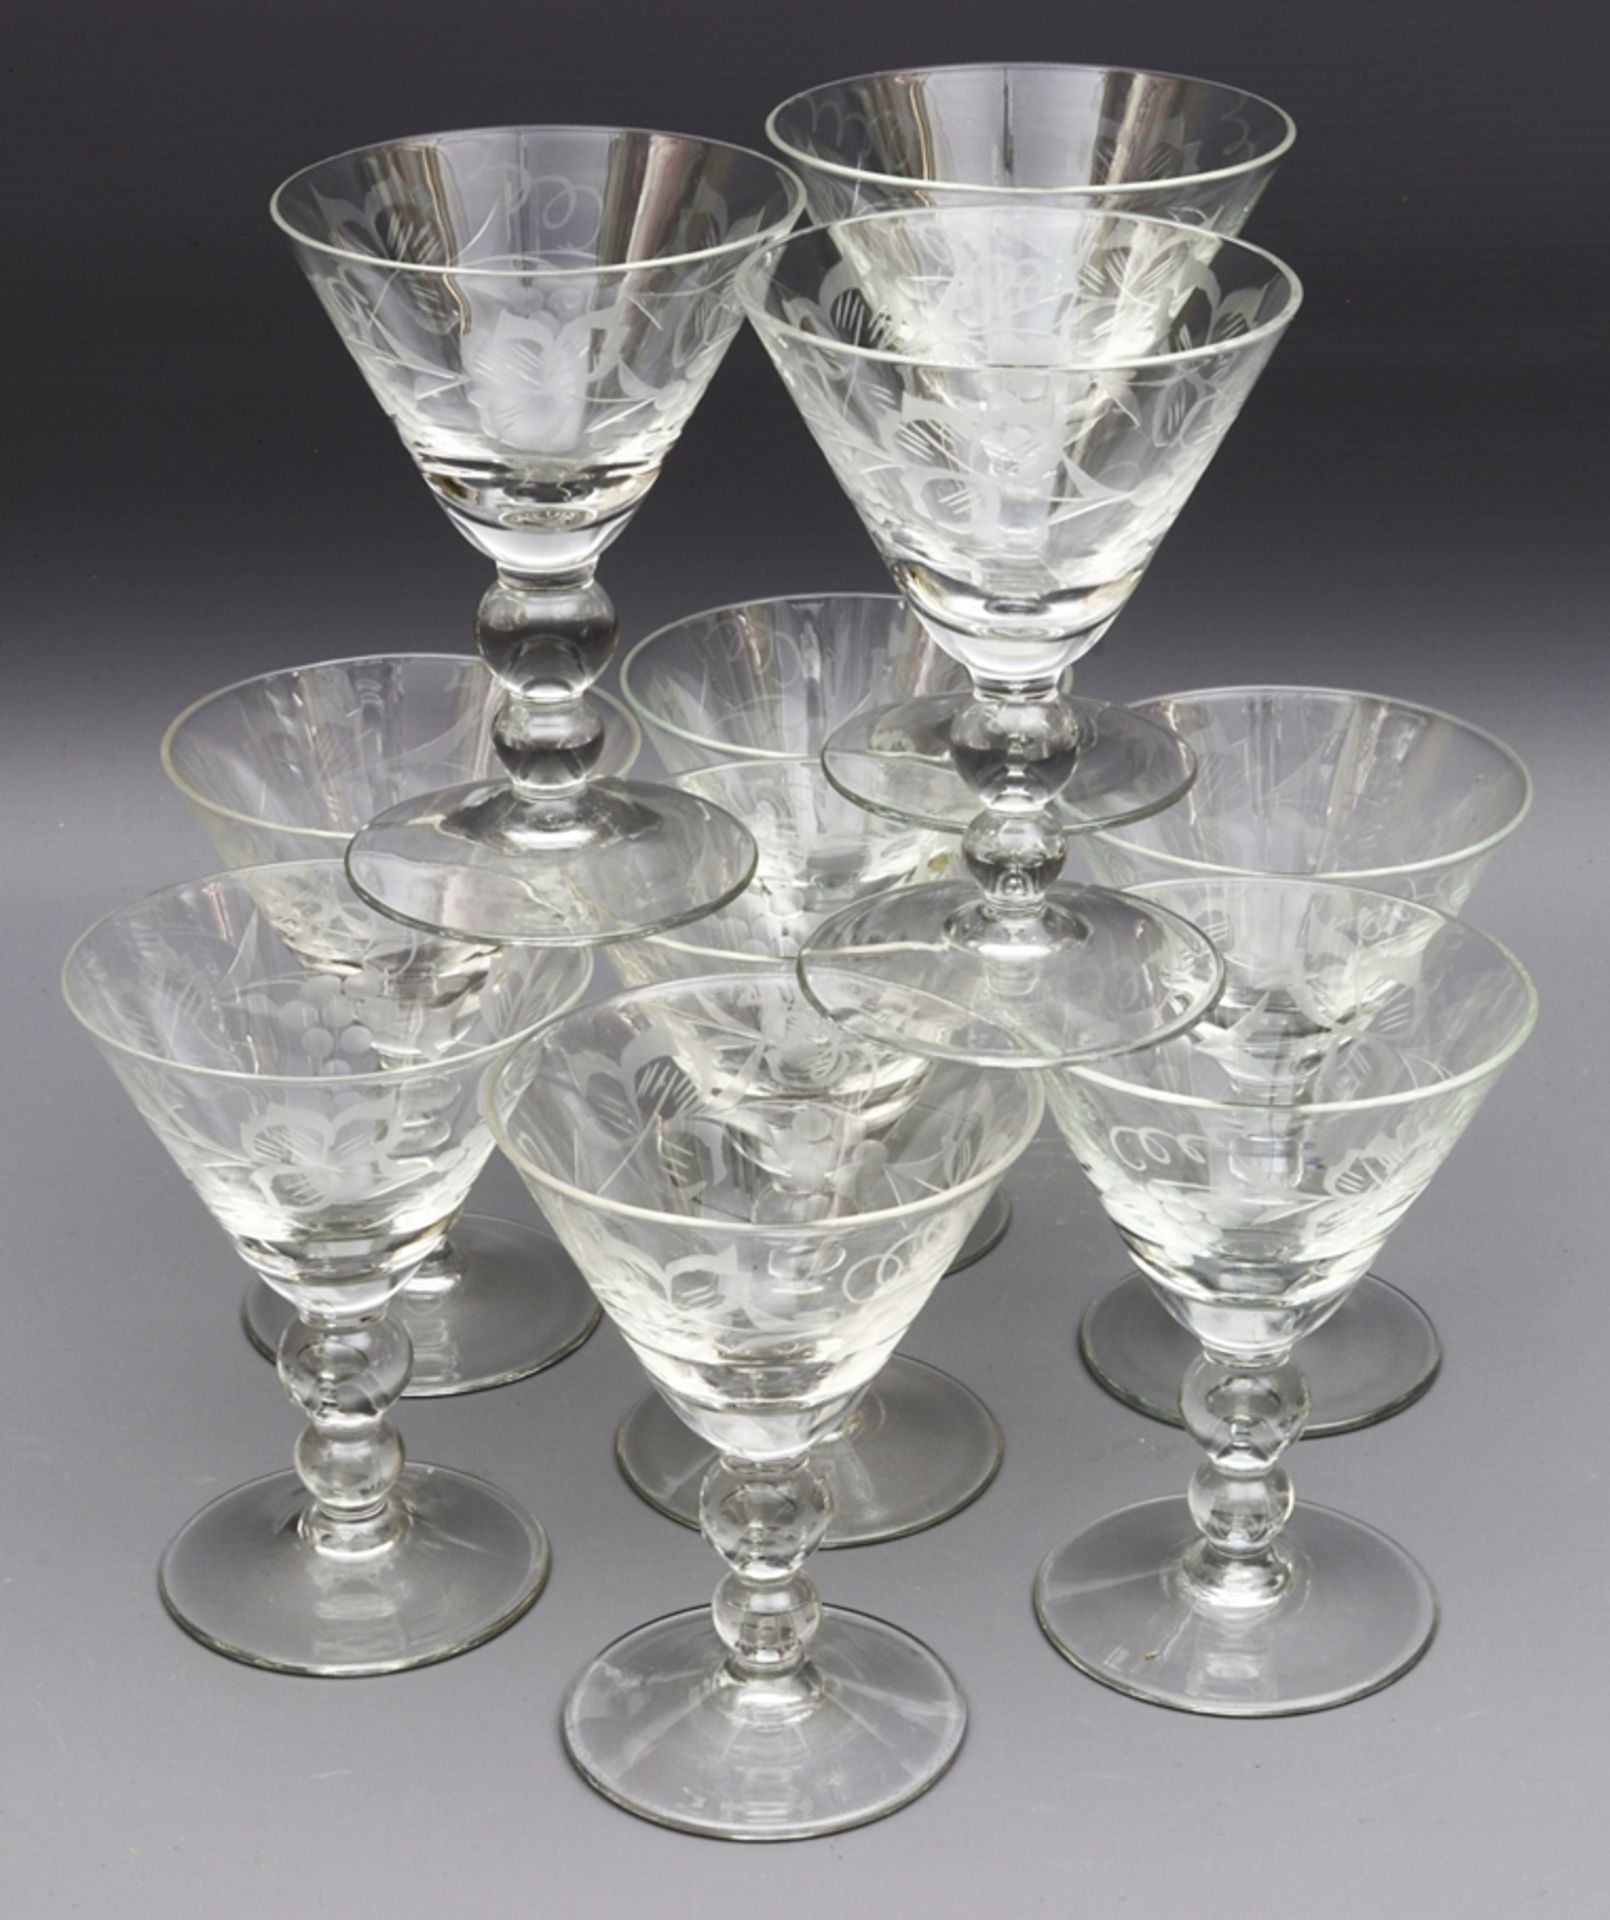 Set of 10 sweet wine glasses, Historism before 1900, German